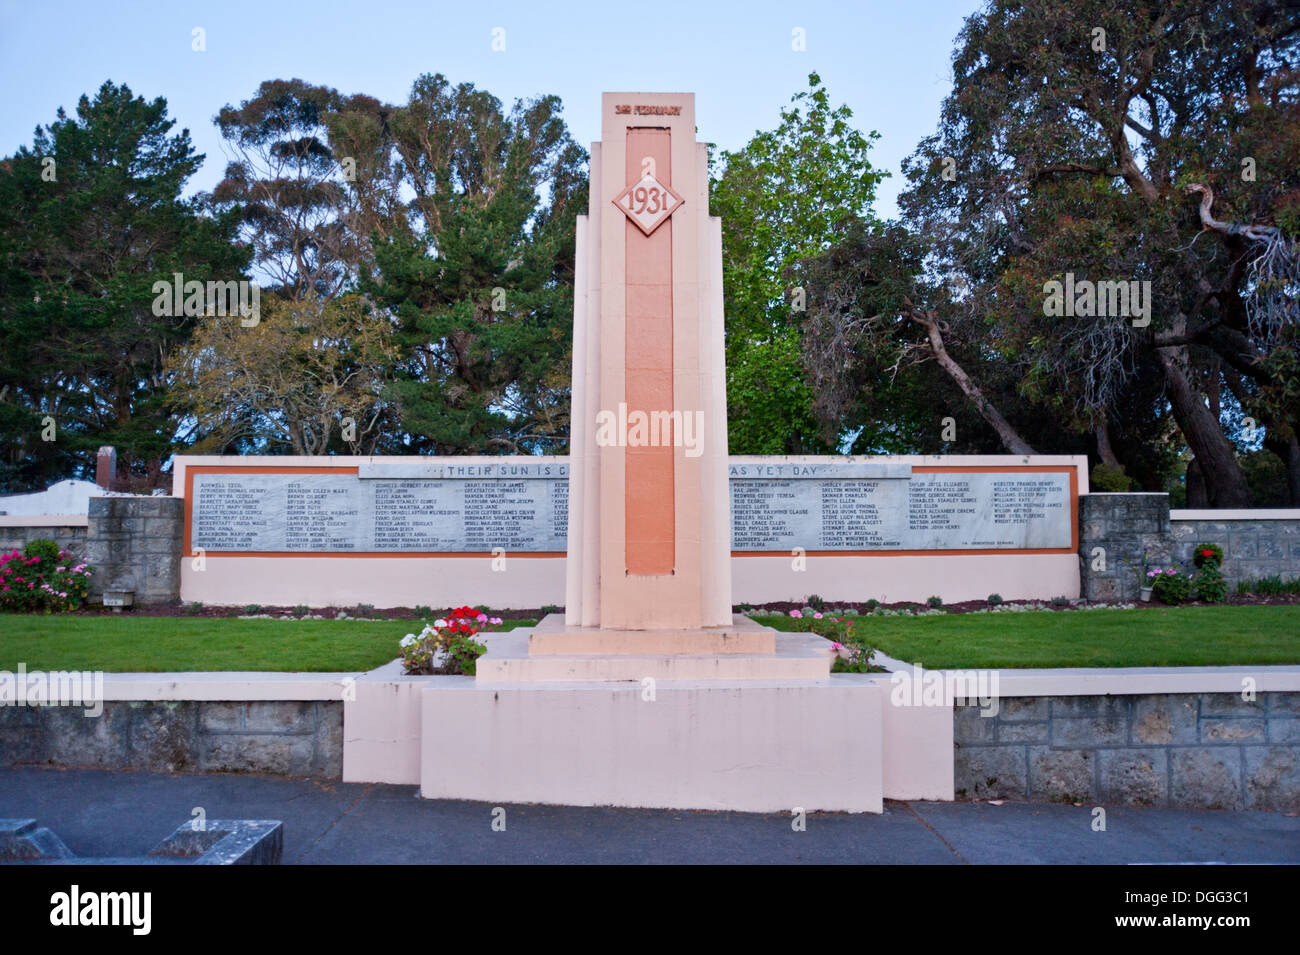 Napier, île du Nord, en Nouvelle-Zélande. Le tremblement de terre art déco, Grave Memorial Park Cemetery de l'île. Contient des restes des victimes du séisme de 1931. Banque D'Images